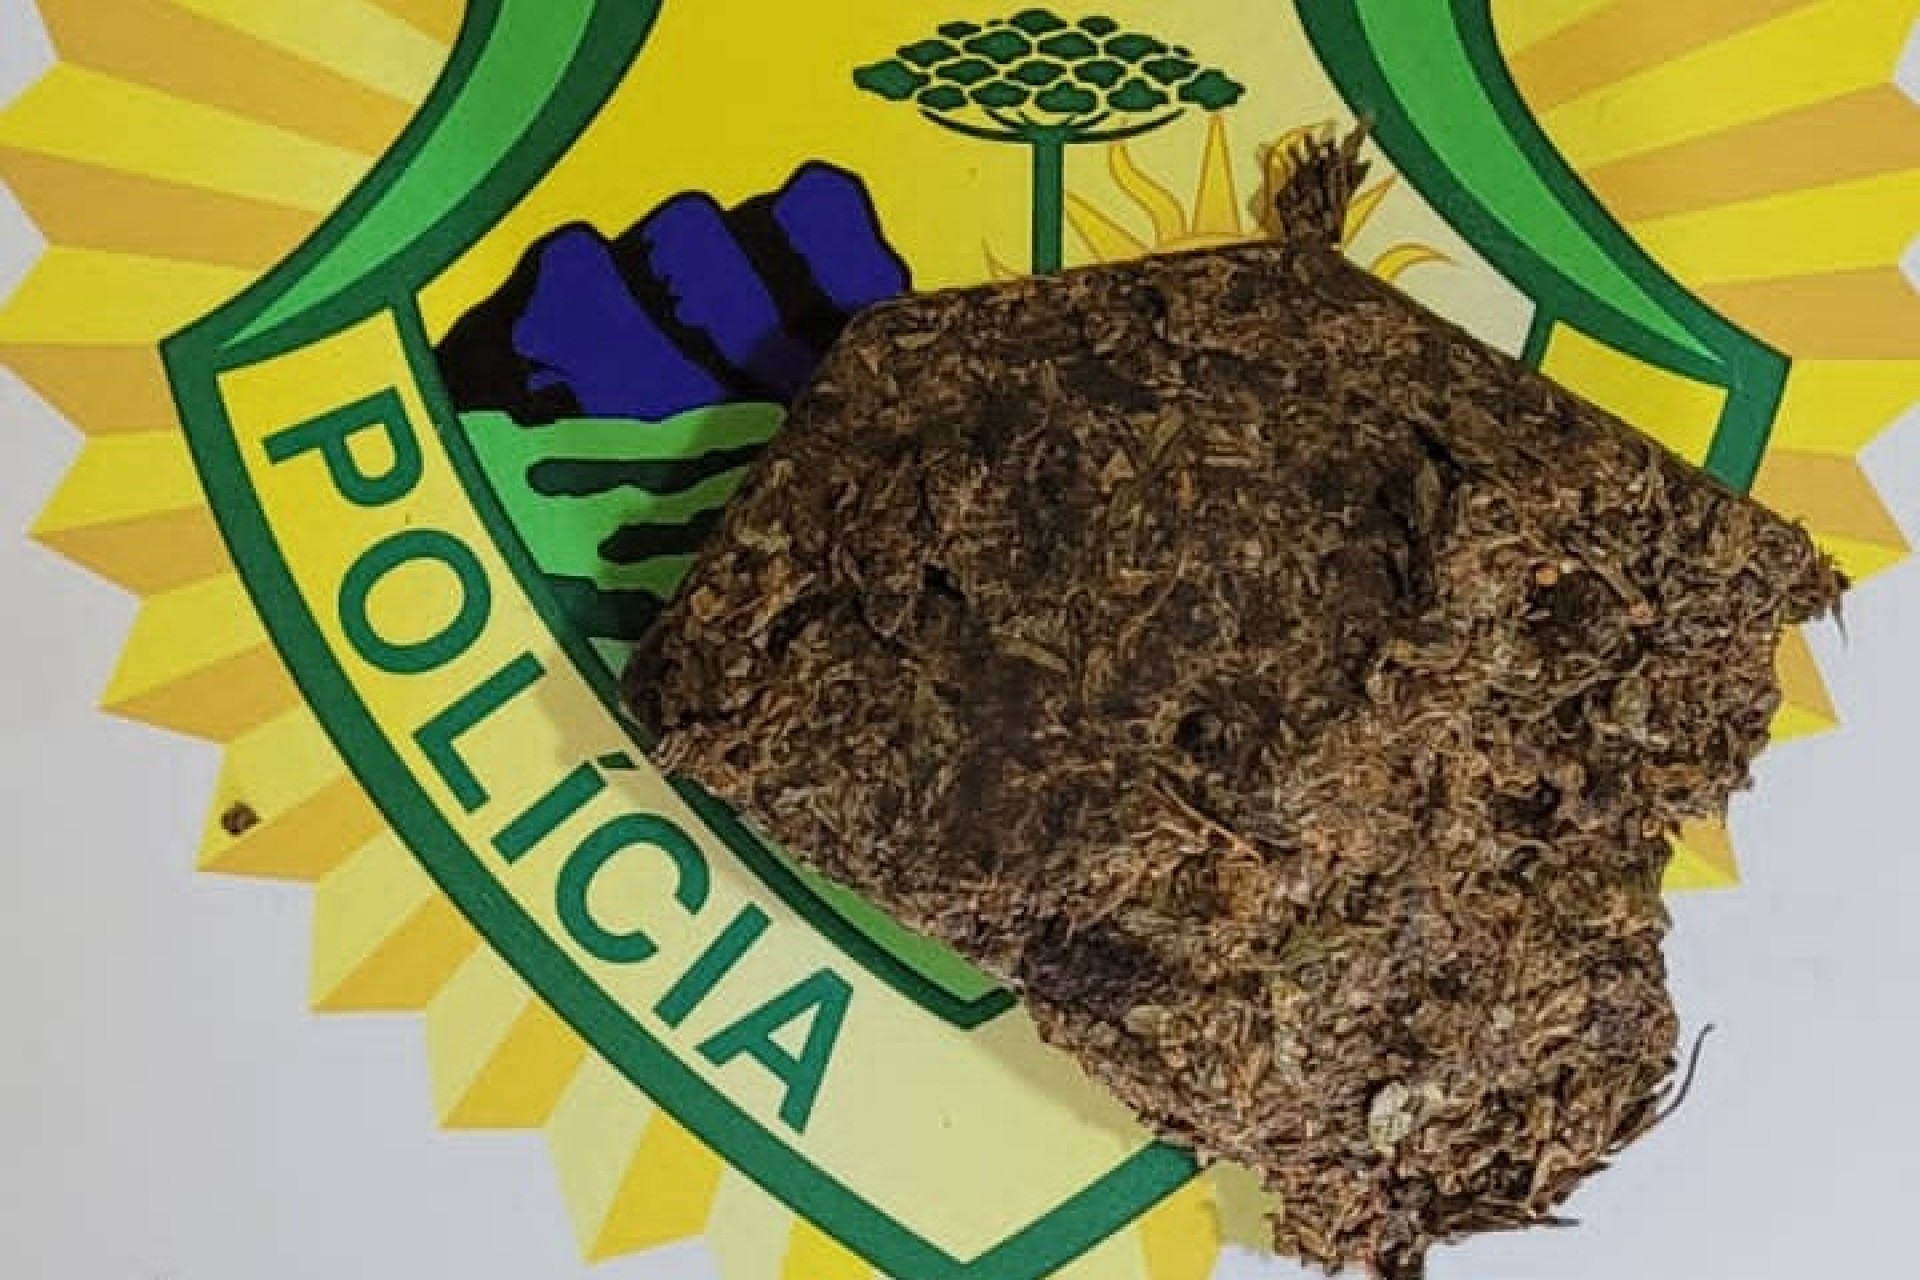 Polícia Militar de Itaipulândia detém homem em posse de droga